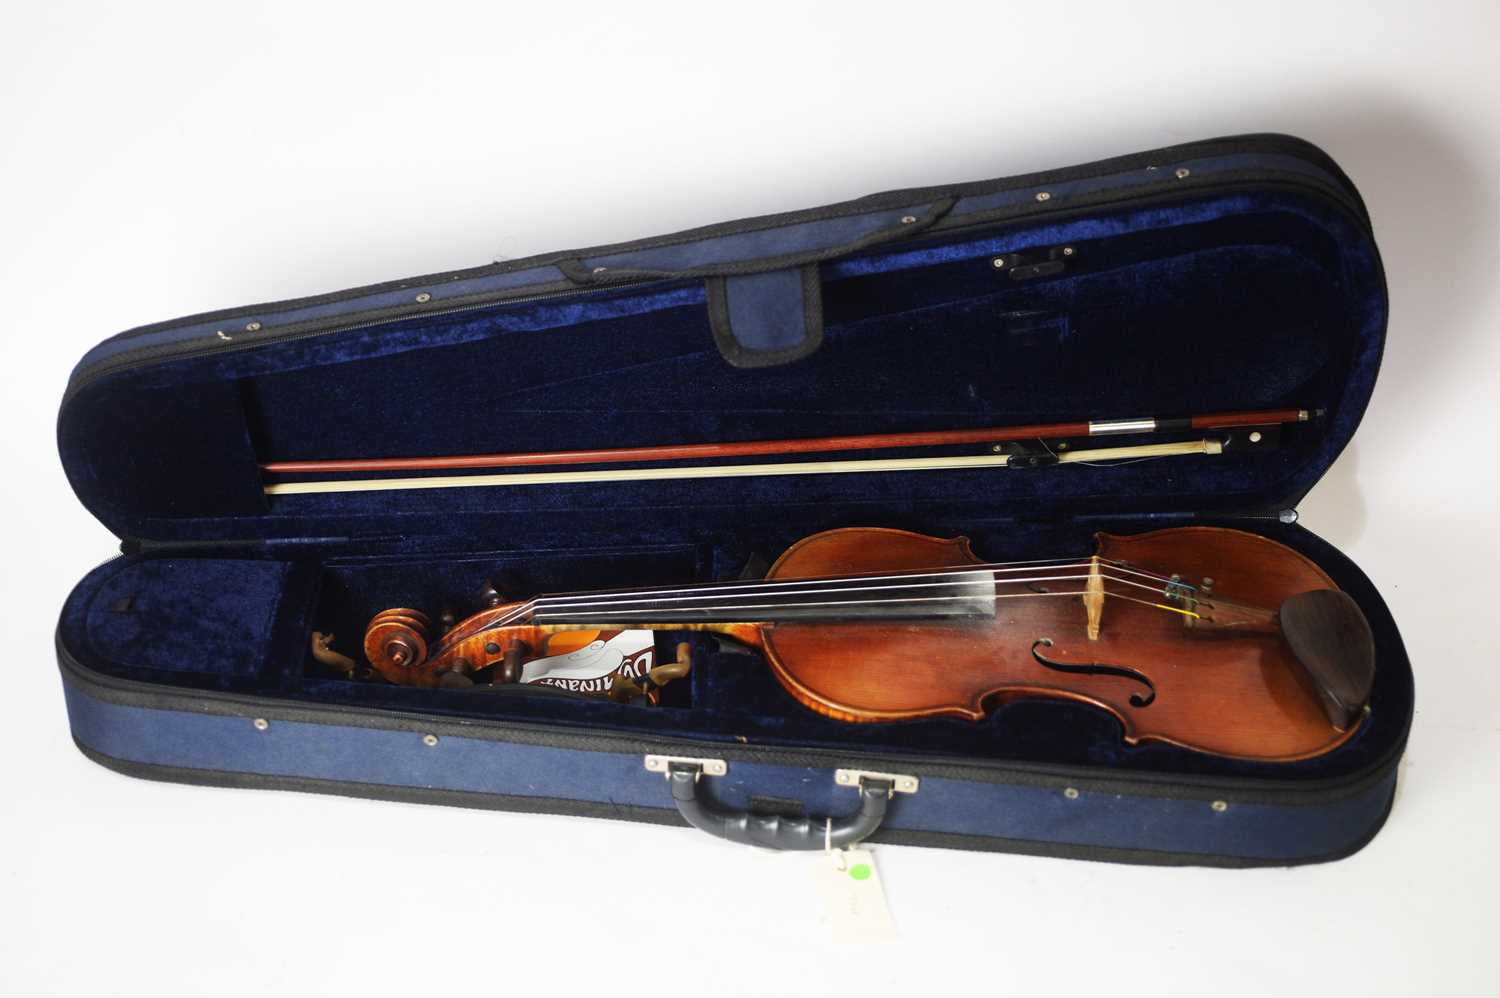 Lot 718 - Continental Stradivari style violin La Salle bow and case